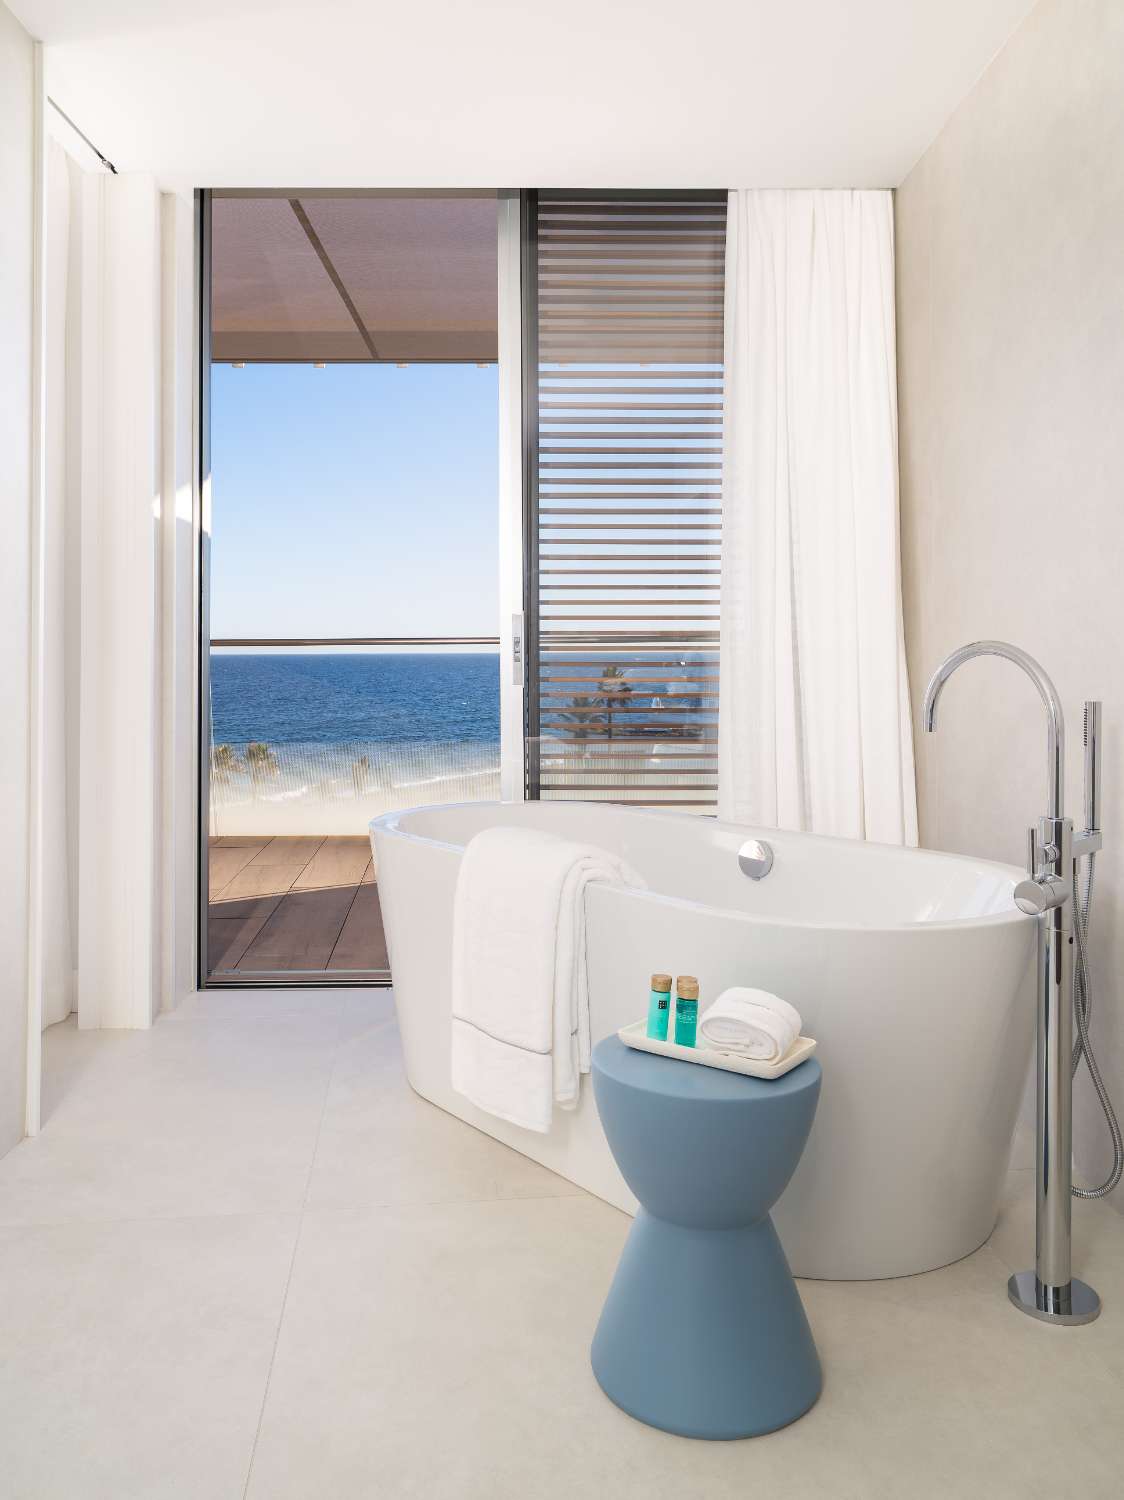 Сказочный двухуровневый пентхаус с 4 спальнями и панорамным видом на море. Дизайн интерьера от Аалто включен в стоимость.